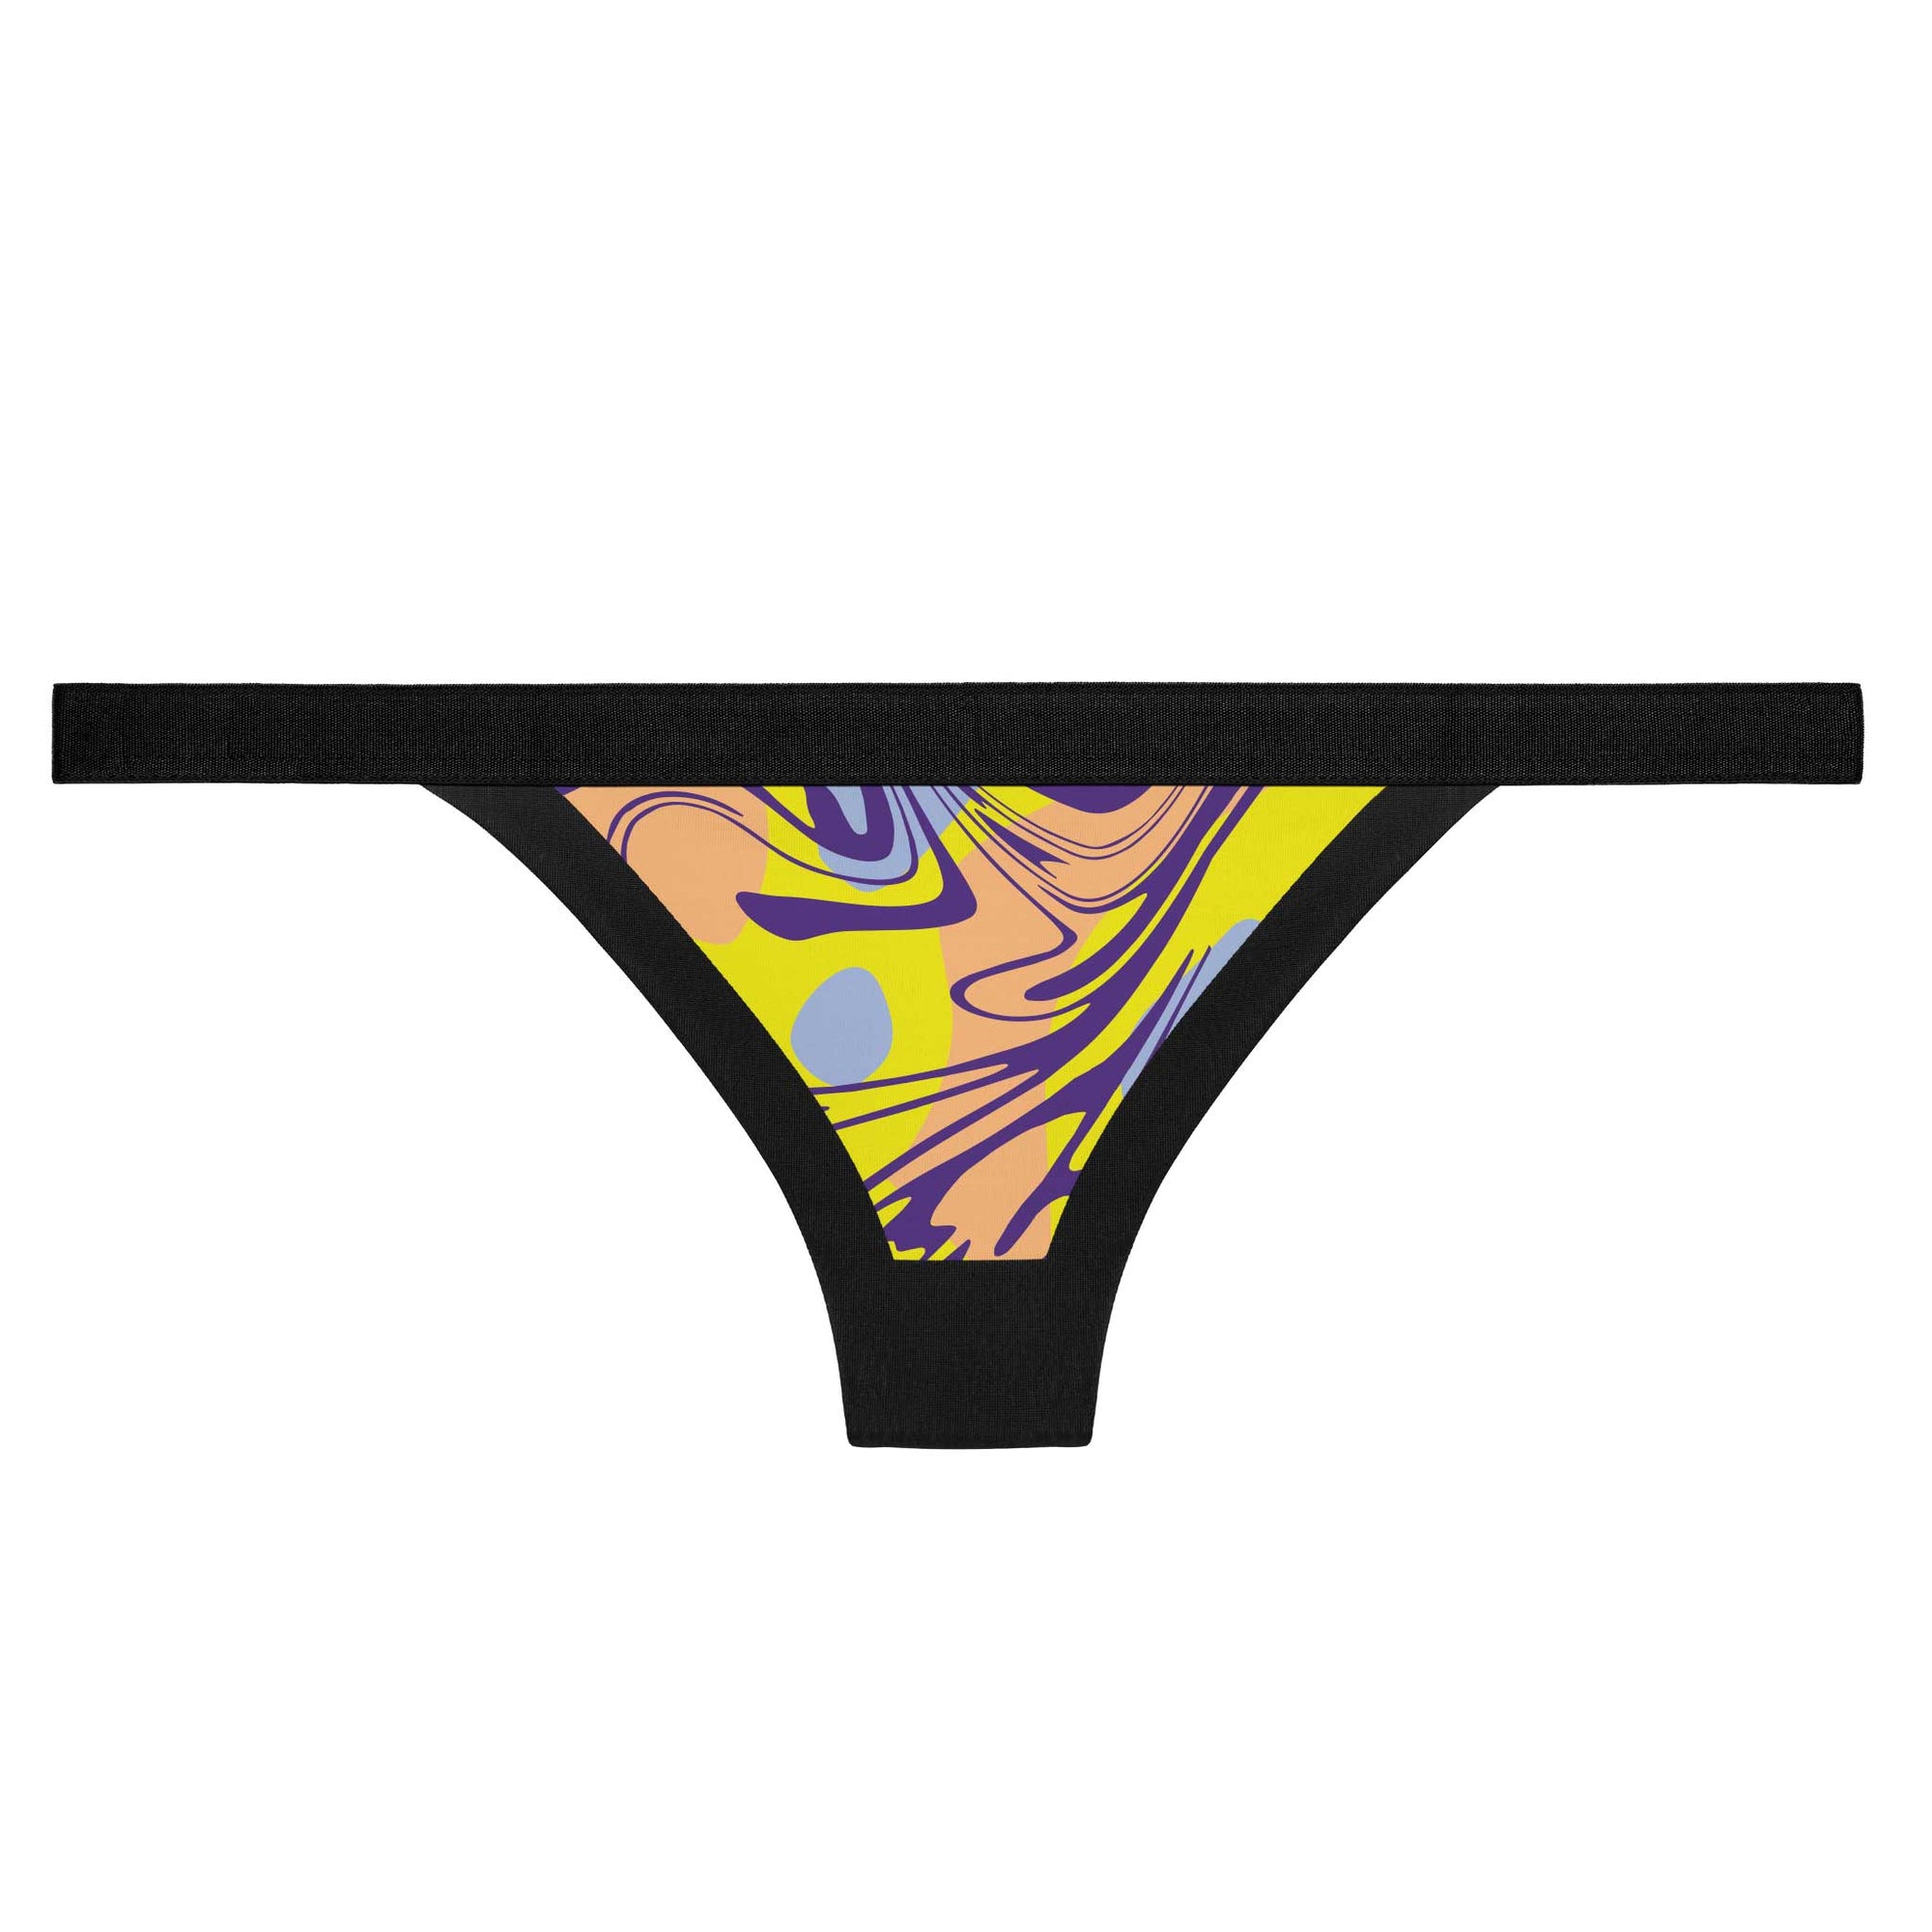 Zebra Neon - Thong - PSD Underwear